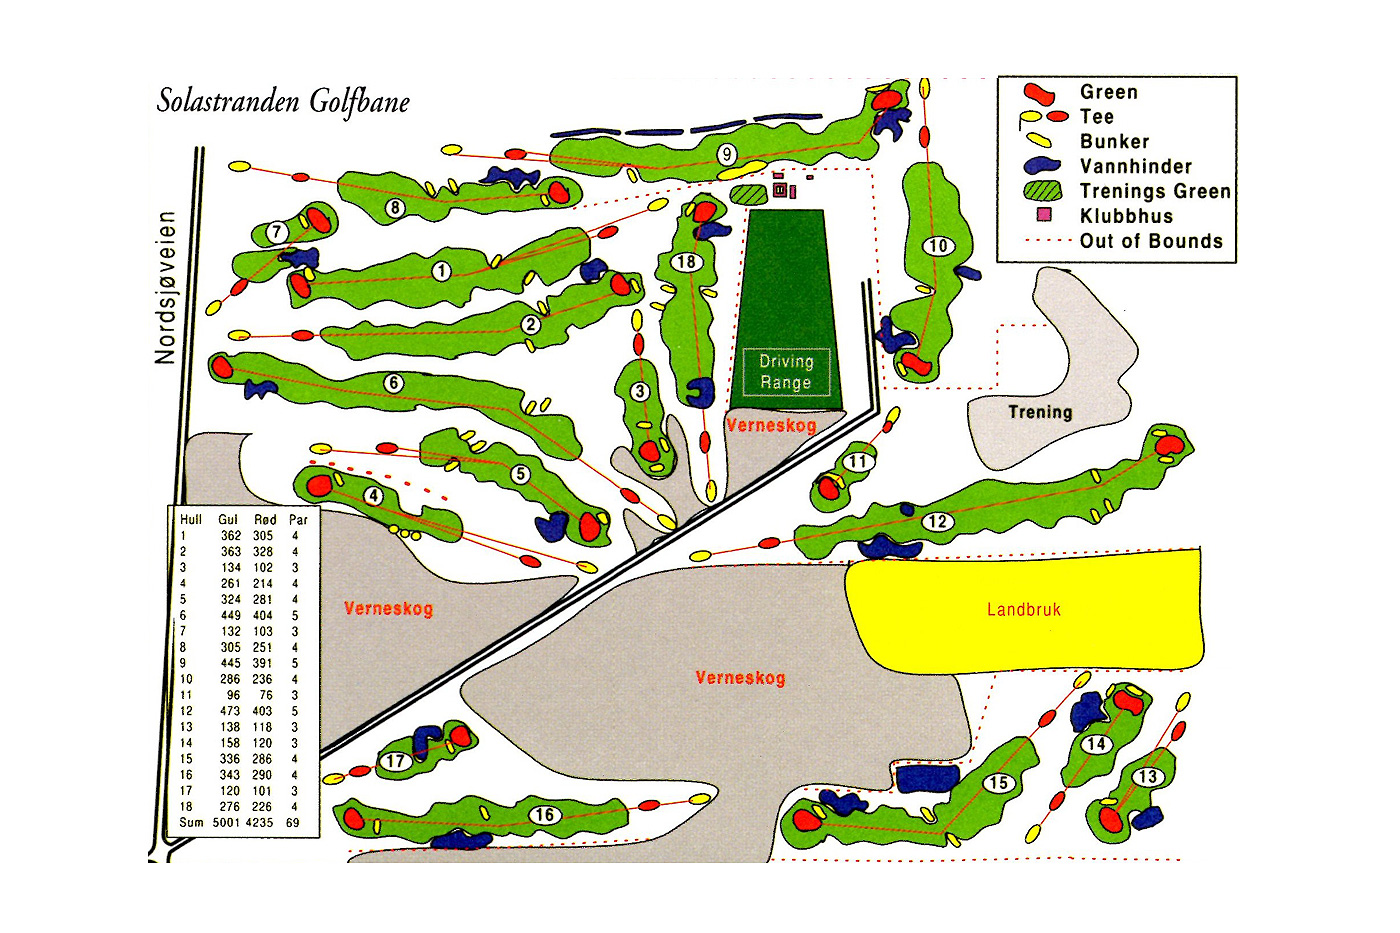 detaljer Brug af en computer kompliceret Solastranden Golfklubb | 100 Golf - Golfs collection